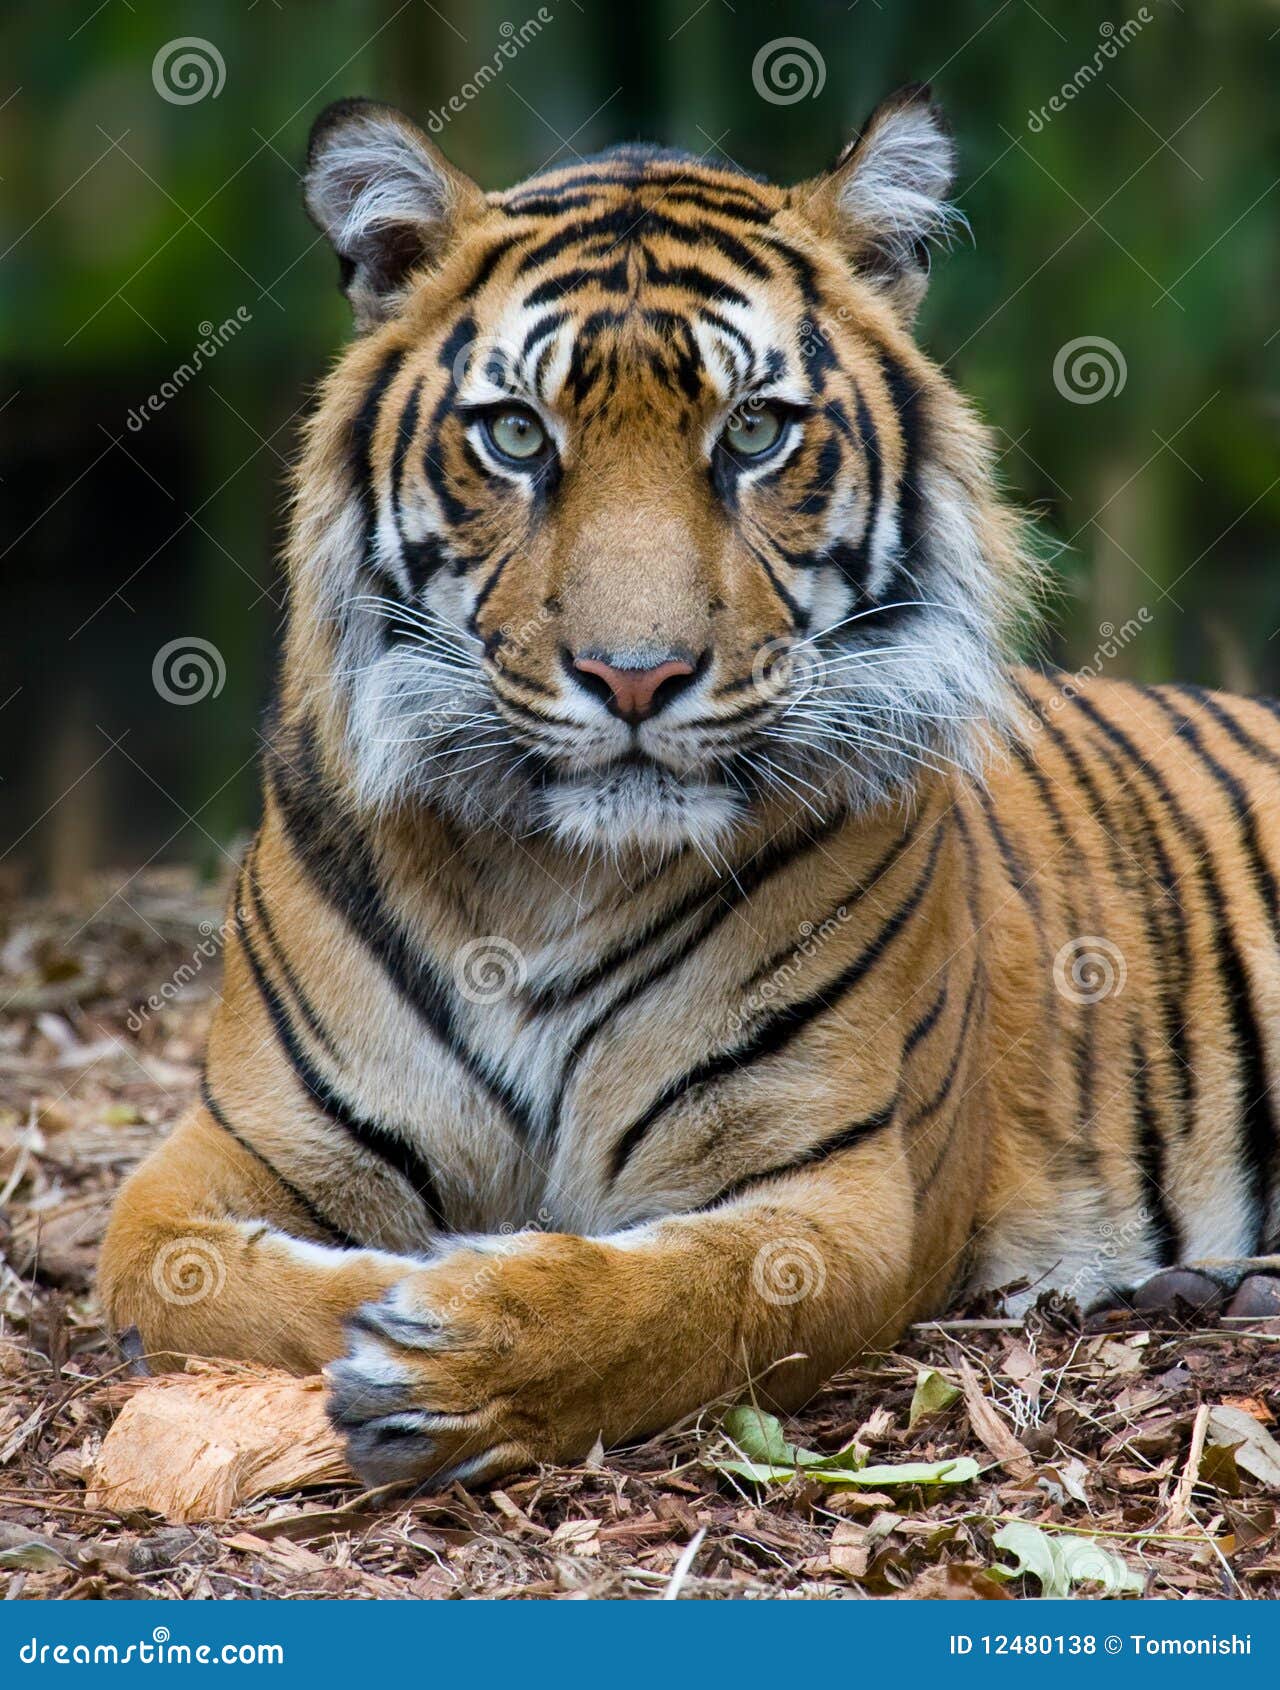 tiger - formal portrait